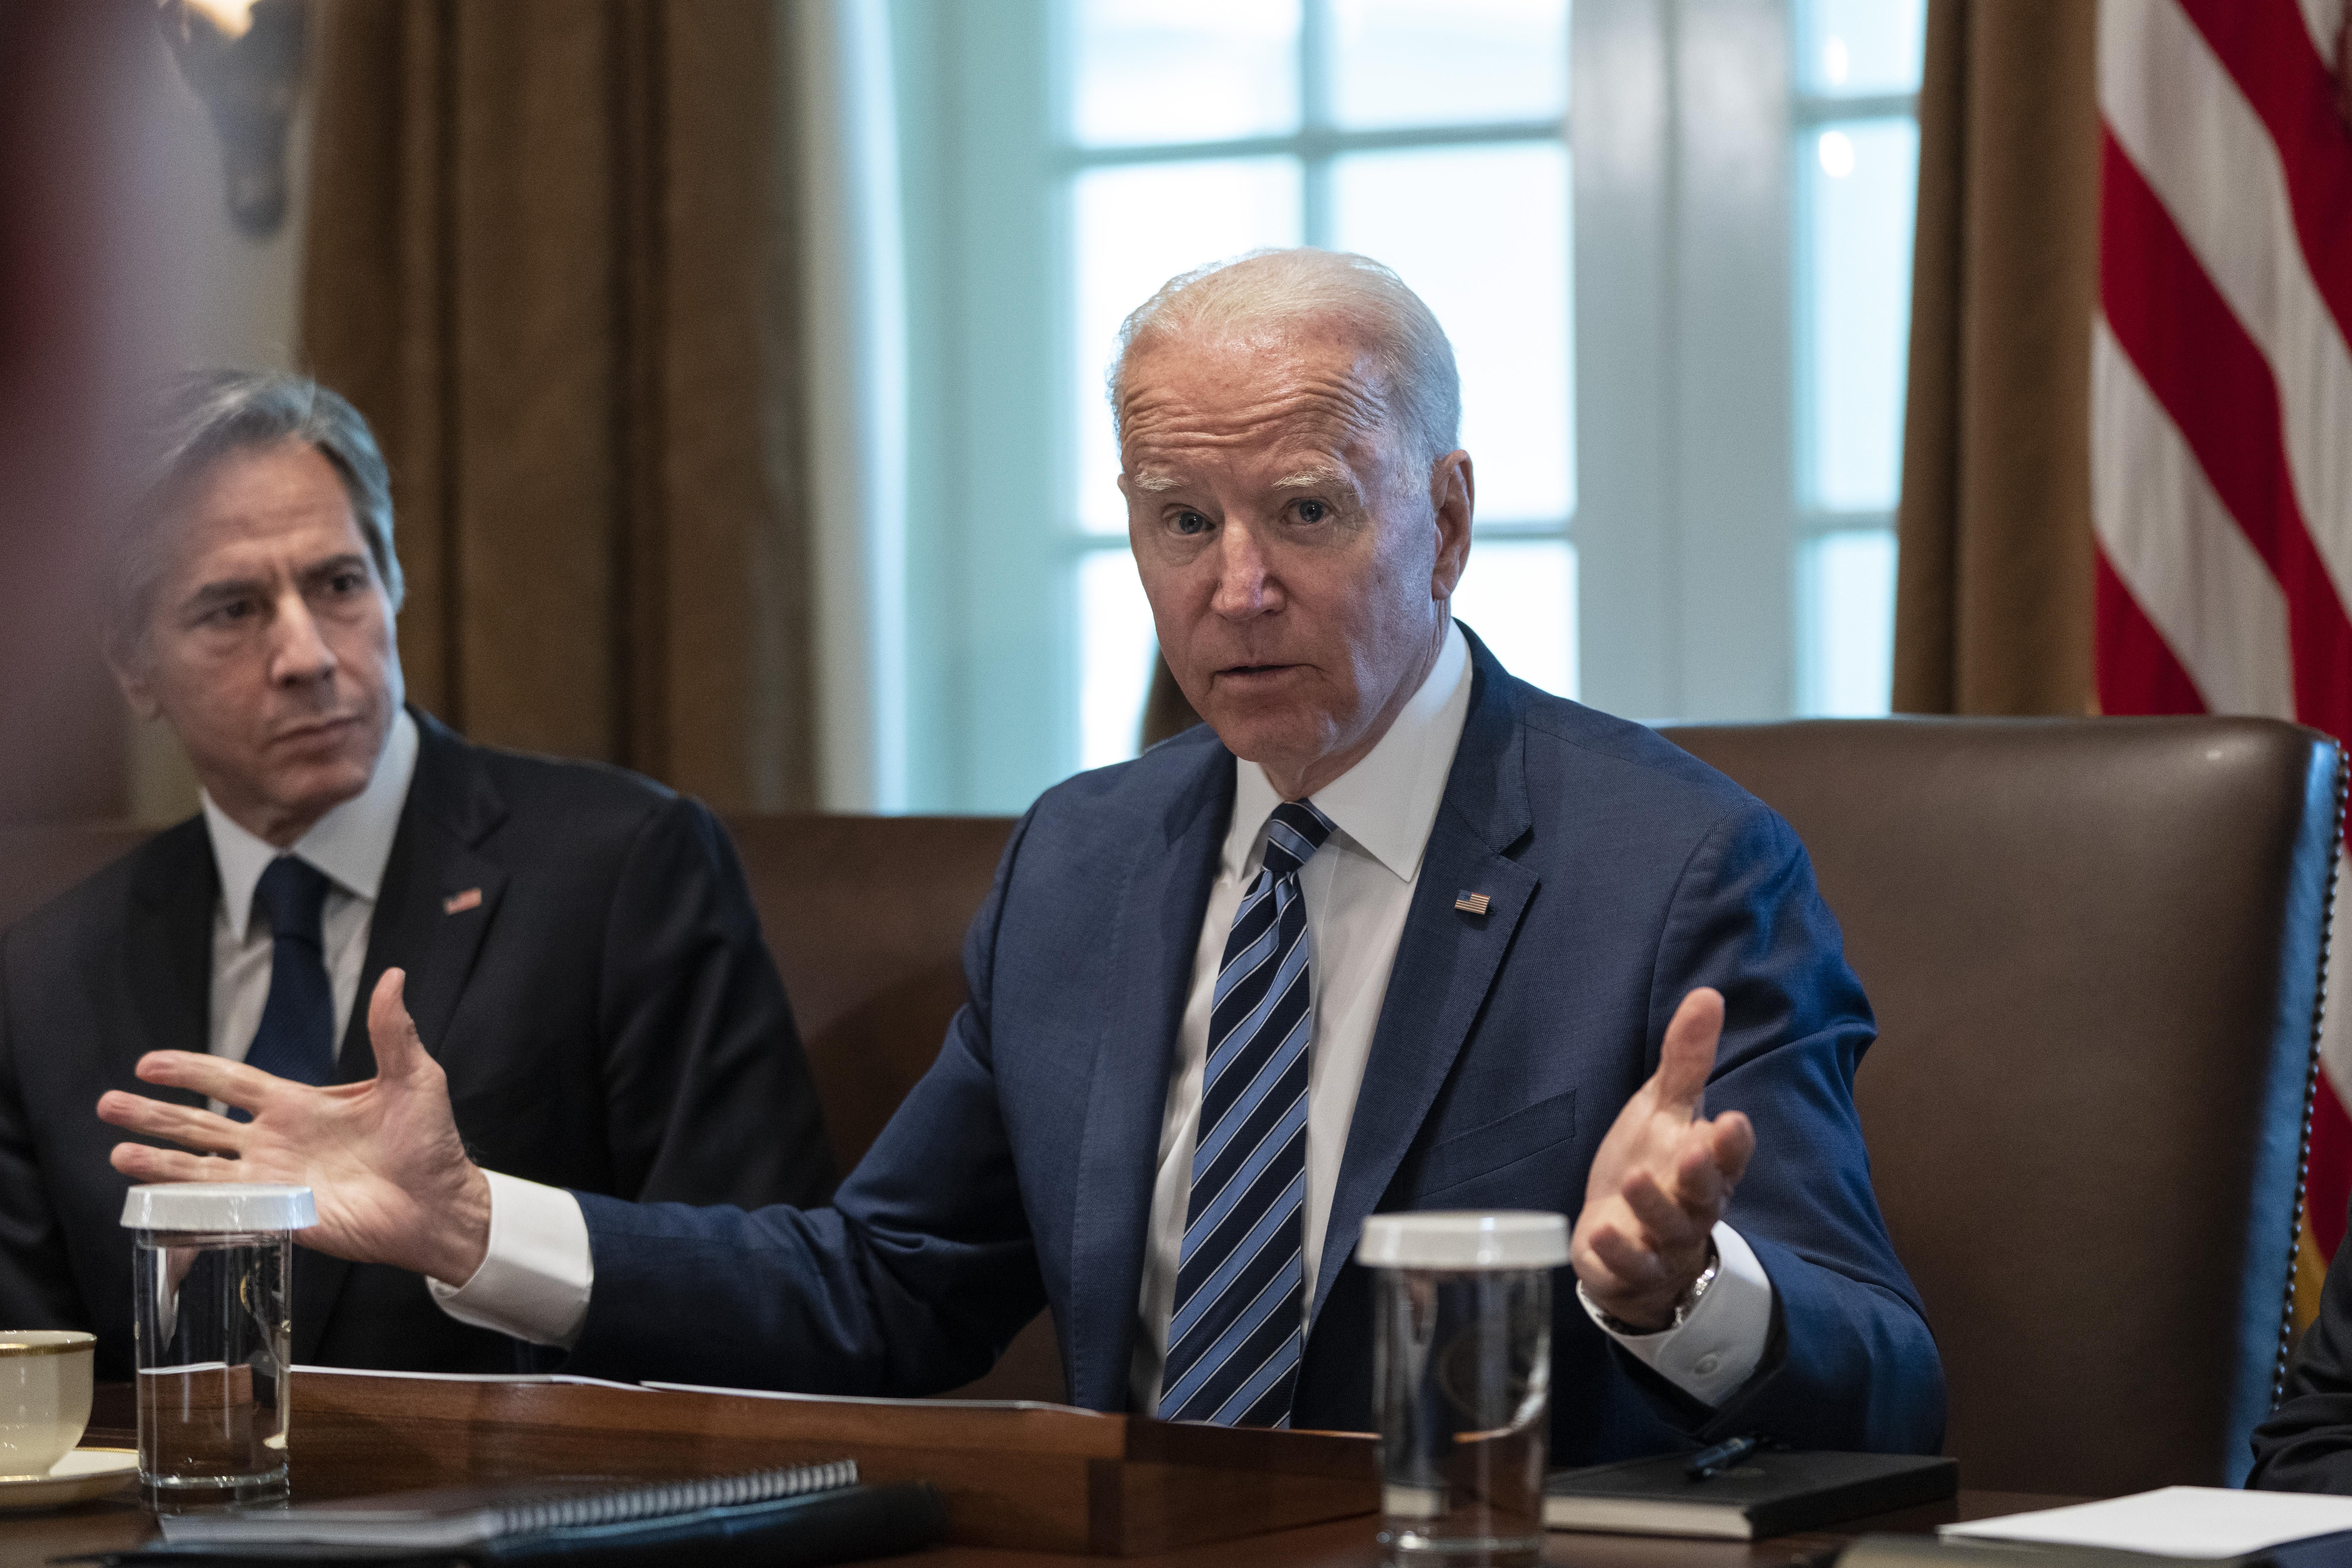 U.S. Secretary of State Antony Blinken looks on as U.S. President Joe Biden speaks at the start of a Cabinet meeting on July 20, 2021, in Washington, D.C.